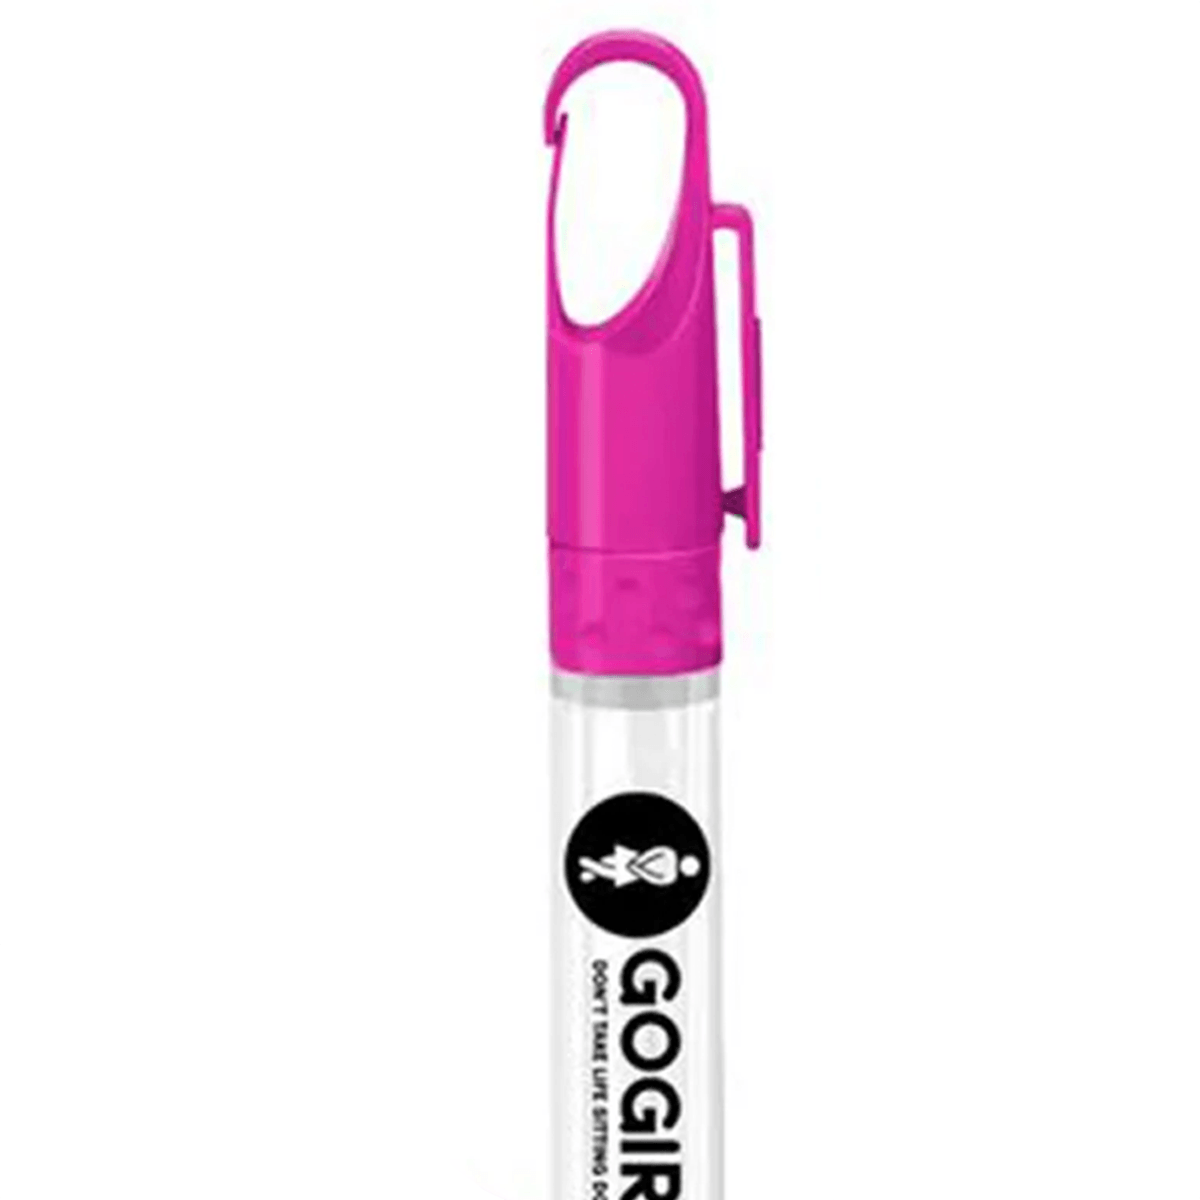 Go Girl Hand Sanitizer Pen Spray - pikkorisport